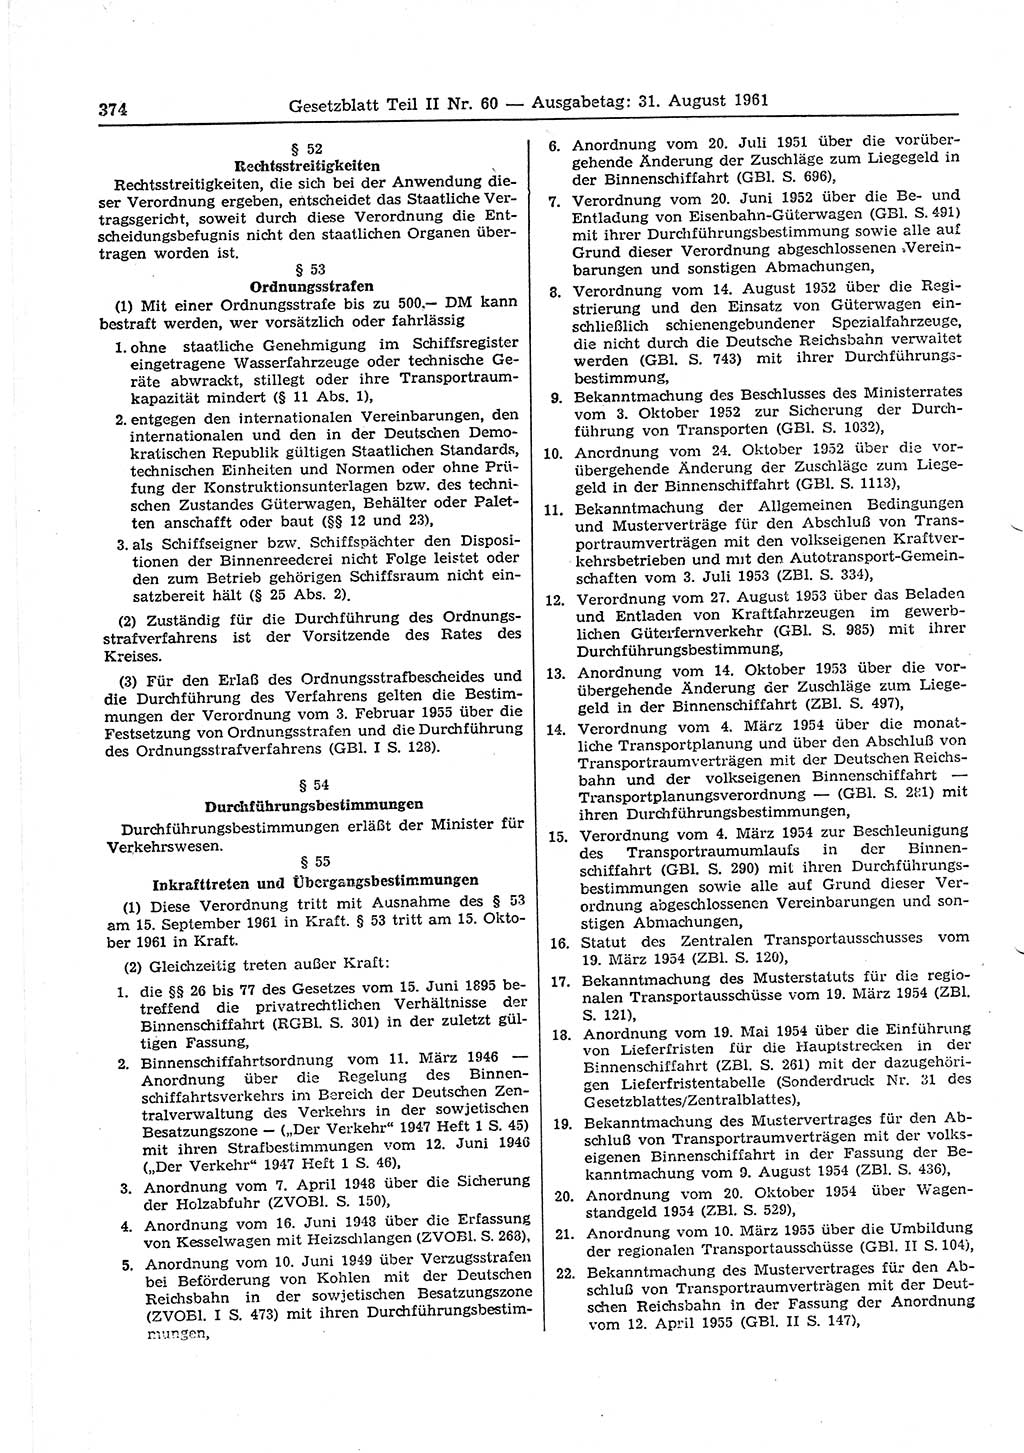 Gesetzblatt (GBl.) der Deutschen Demokratischen Republik (DDR) Teil ⅠⅠ 1961, Seite 374 (GBl. DDR ⅠⅠ 1961, S. 374)